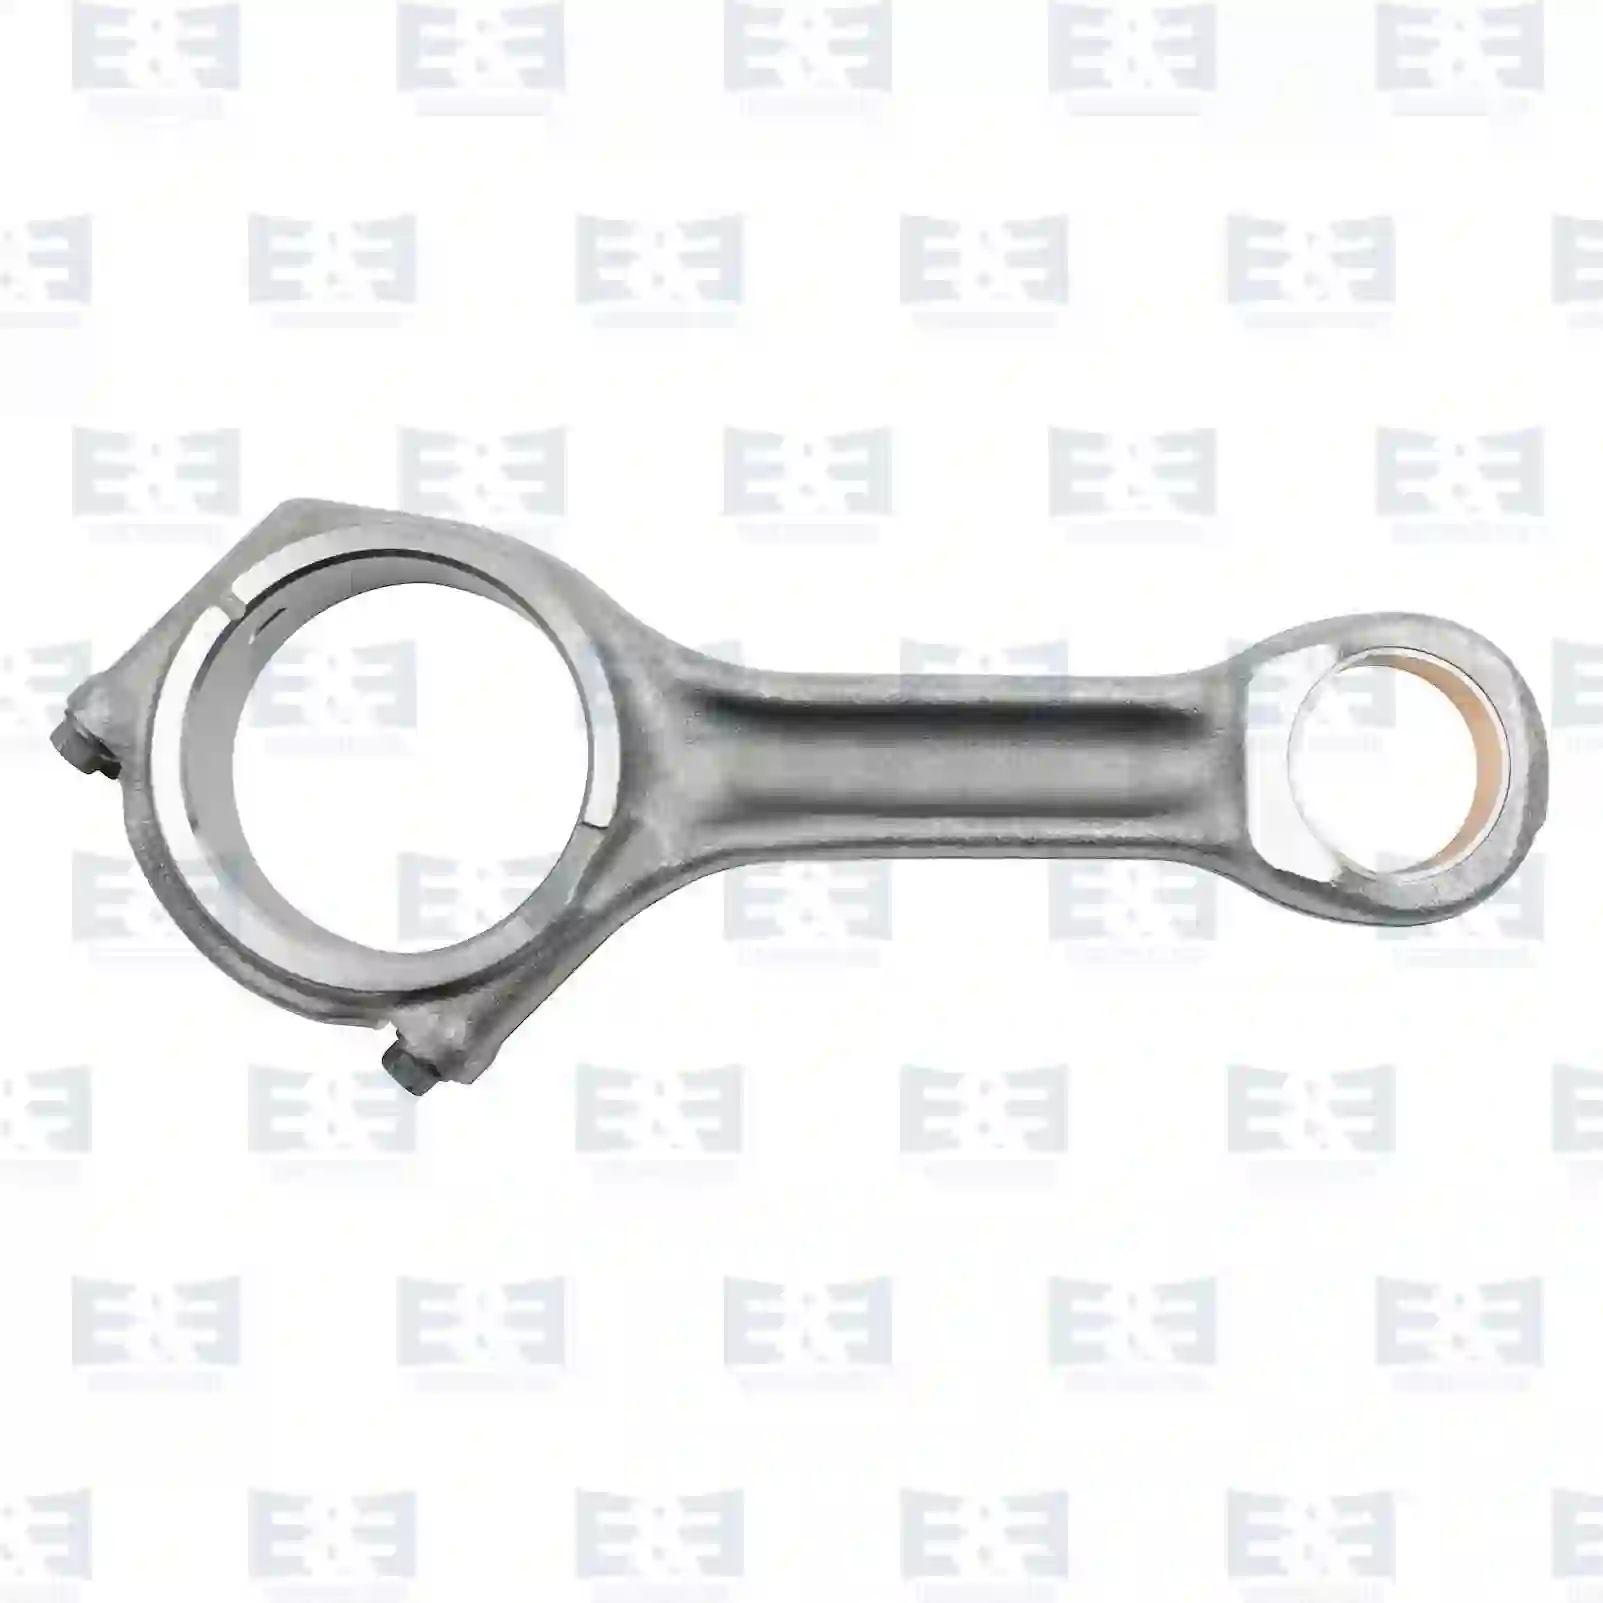  Connecting rod, straight head || E&E Truck Spare Parts | Truck Spare Parts, Auotomotive Spare Parts